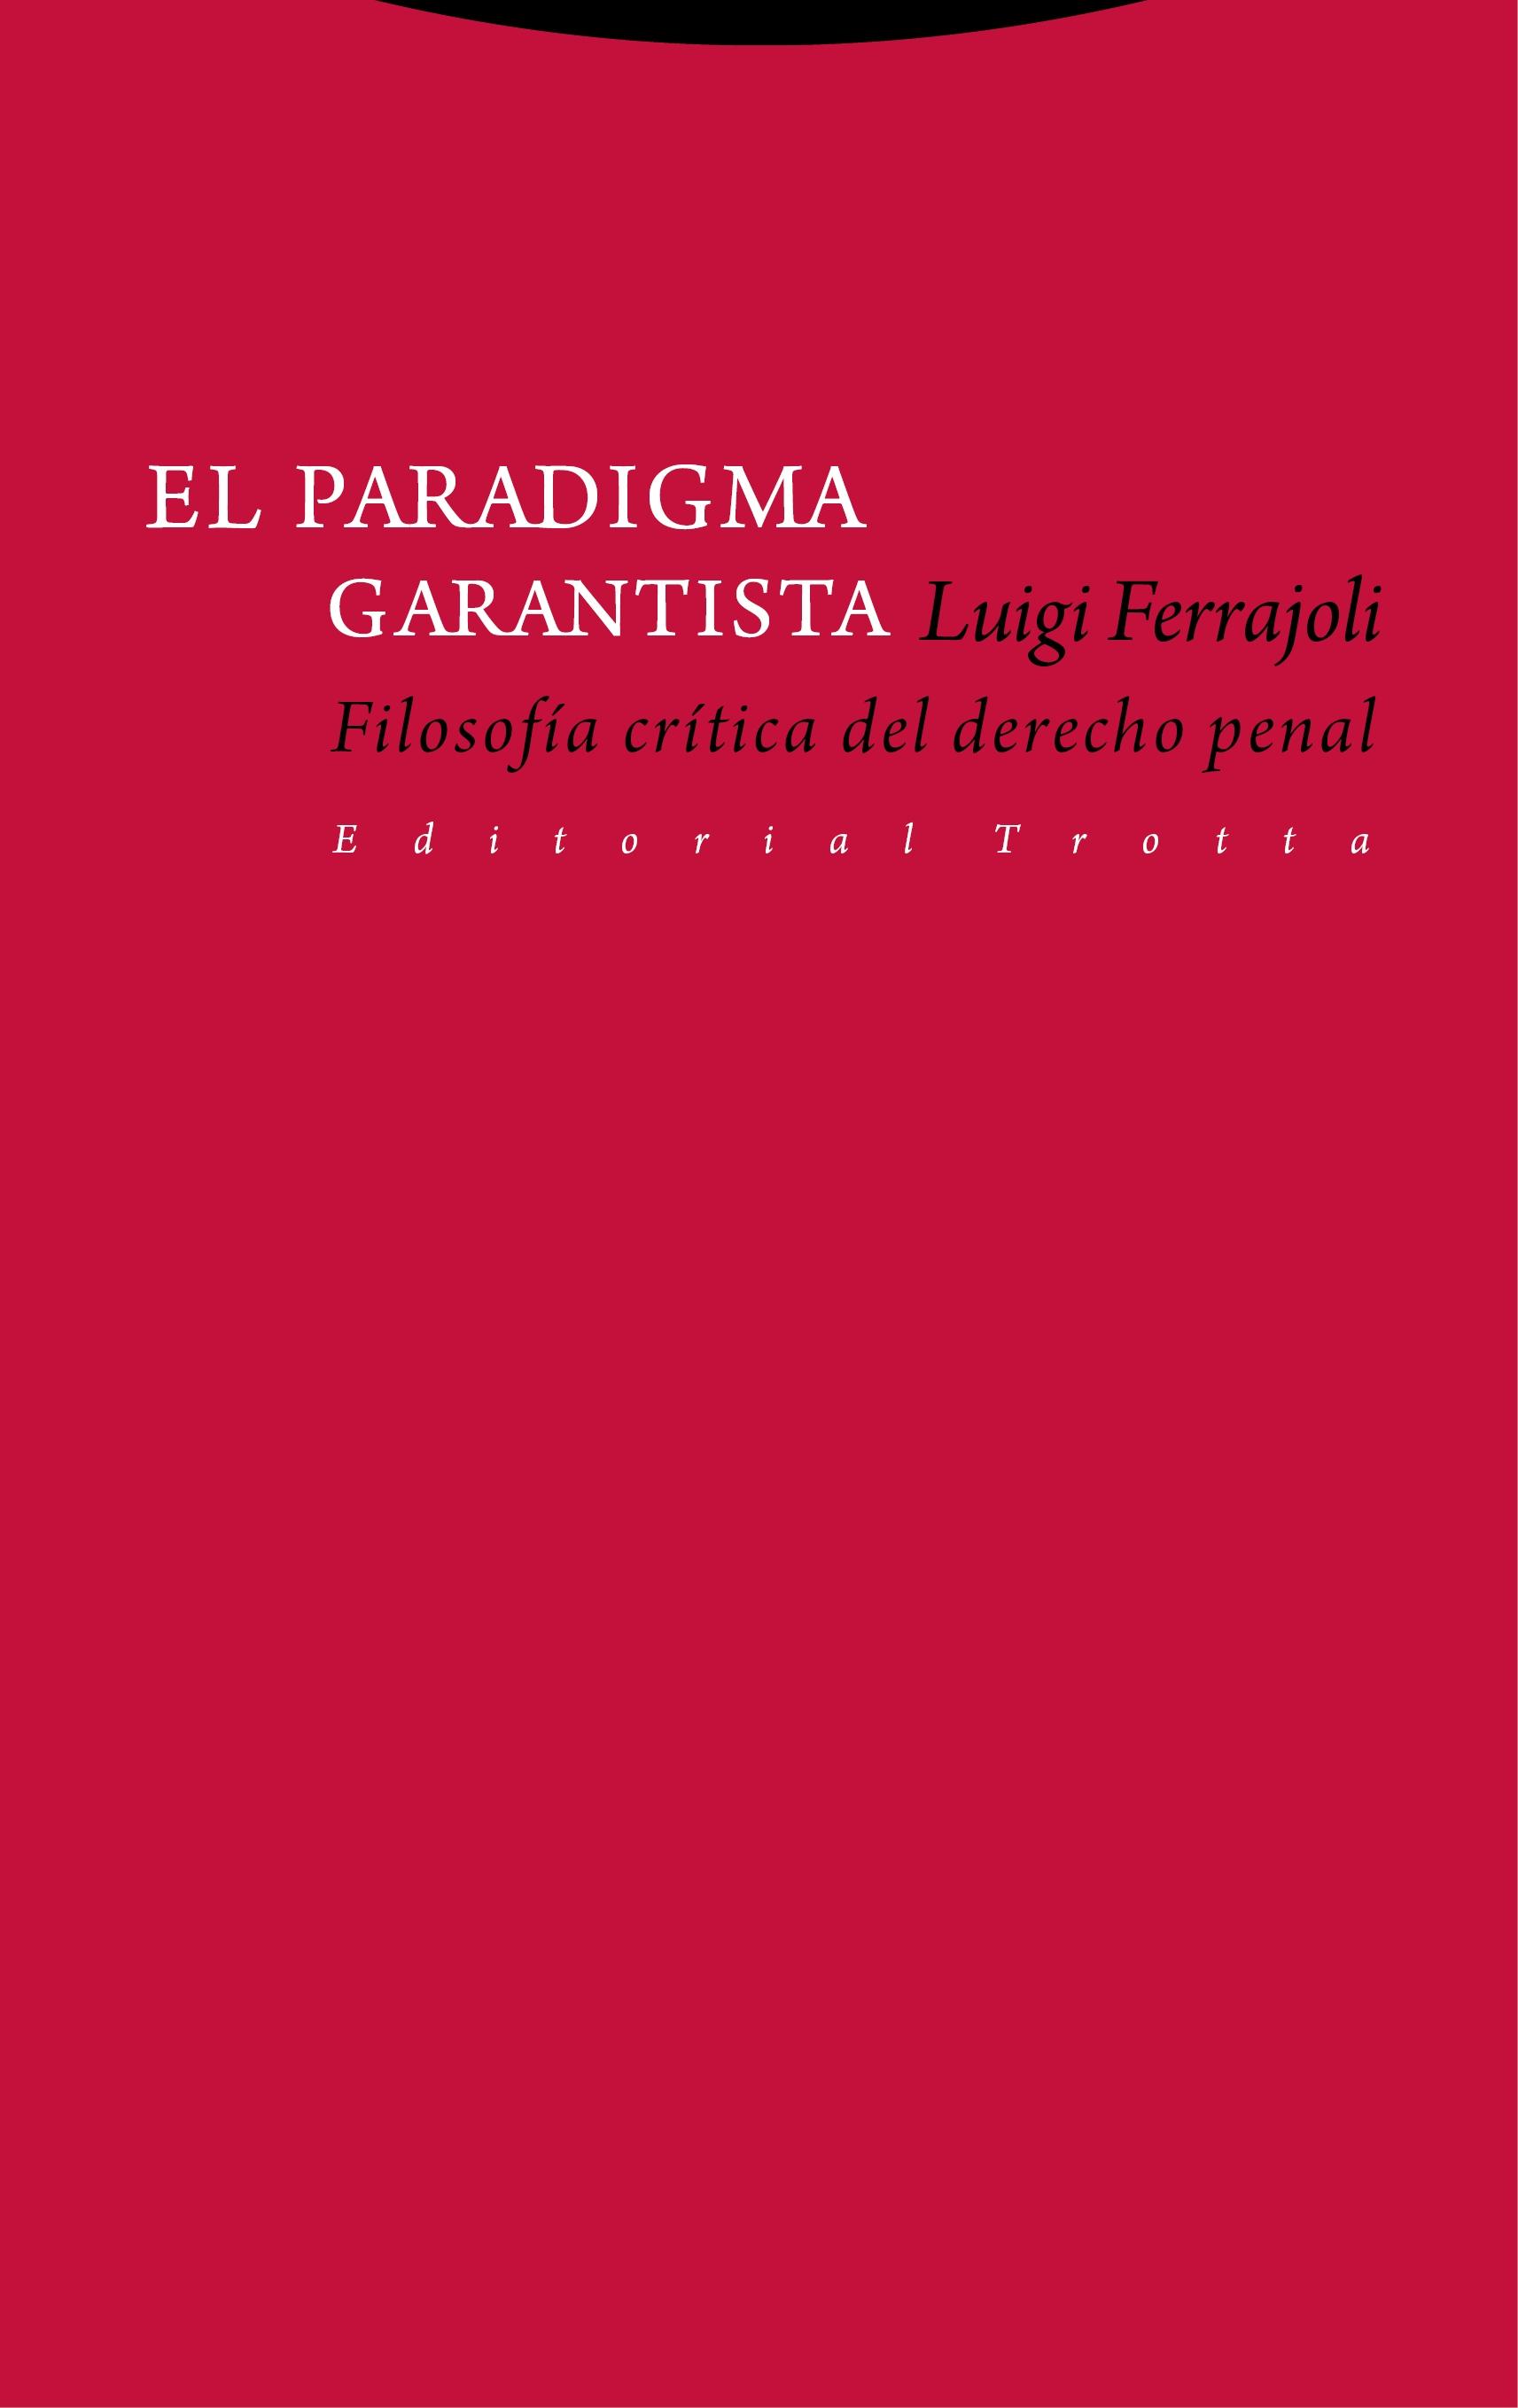 El Paradigma Garantista "Filosofía Crítica del Derecho Penal"